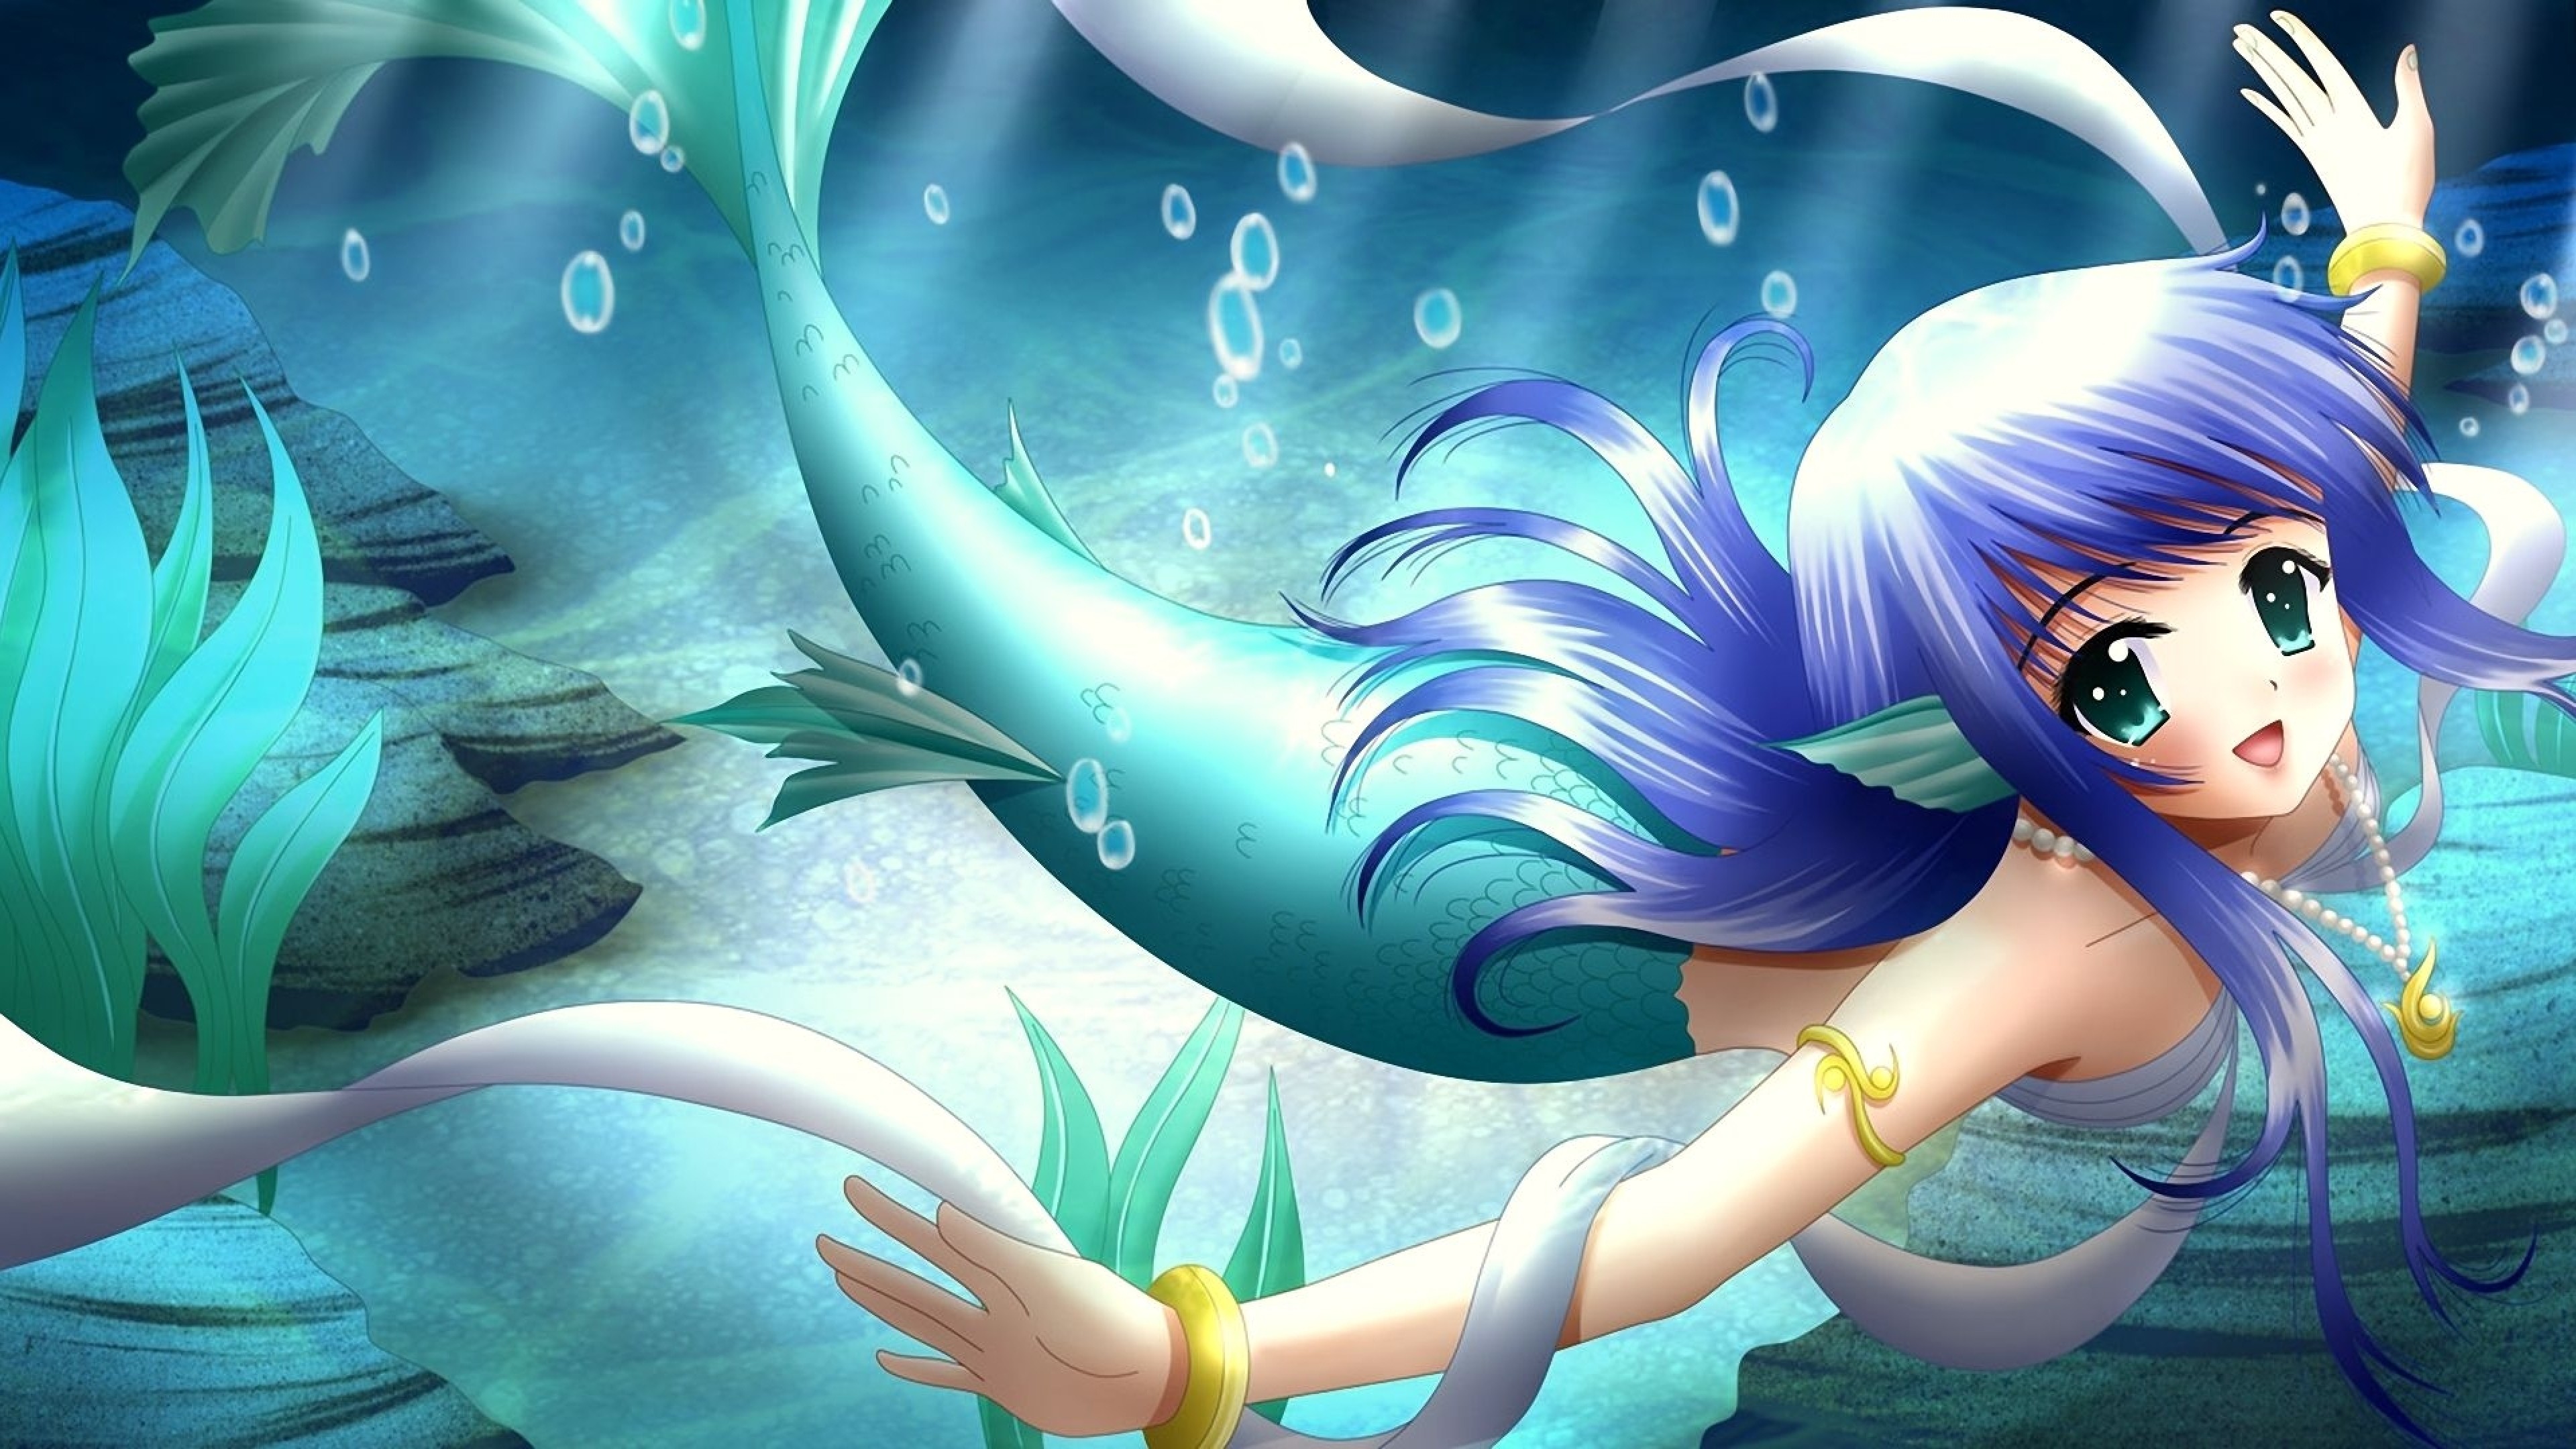 Mermaid - với những hình ảnh đẹp như trong tranh vẽ, Mermaid là từ khóa đem đến nhiều kỷ niệm ngọt ngào cho tuổi thơ của các cô gái. Tuy có nhiều lời đồn đại xung quanh \